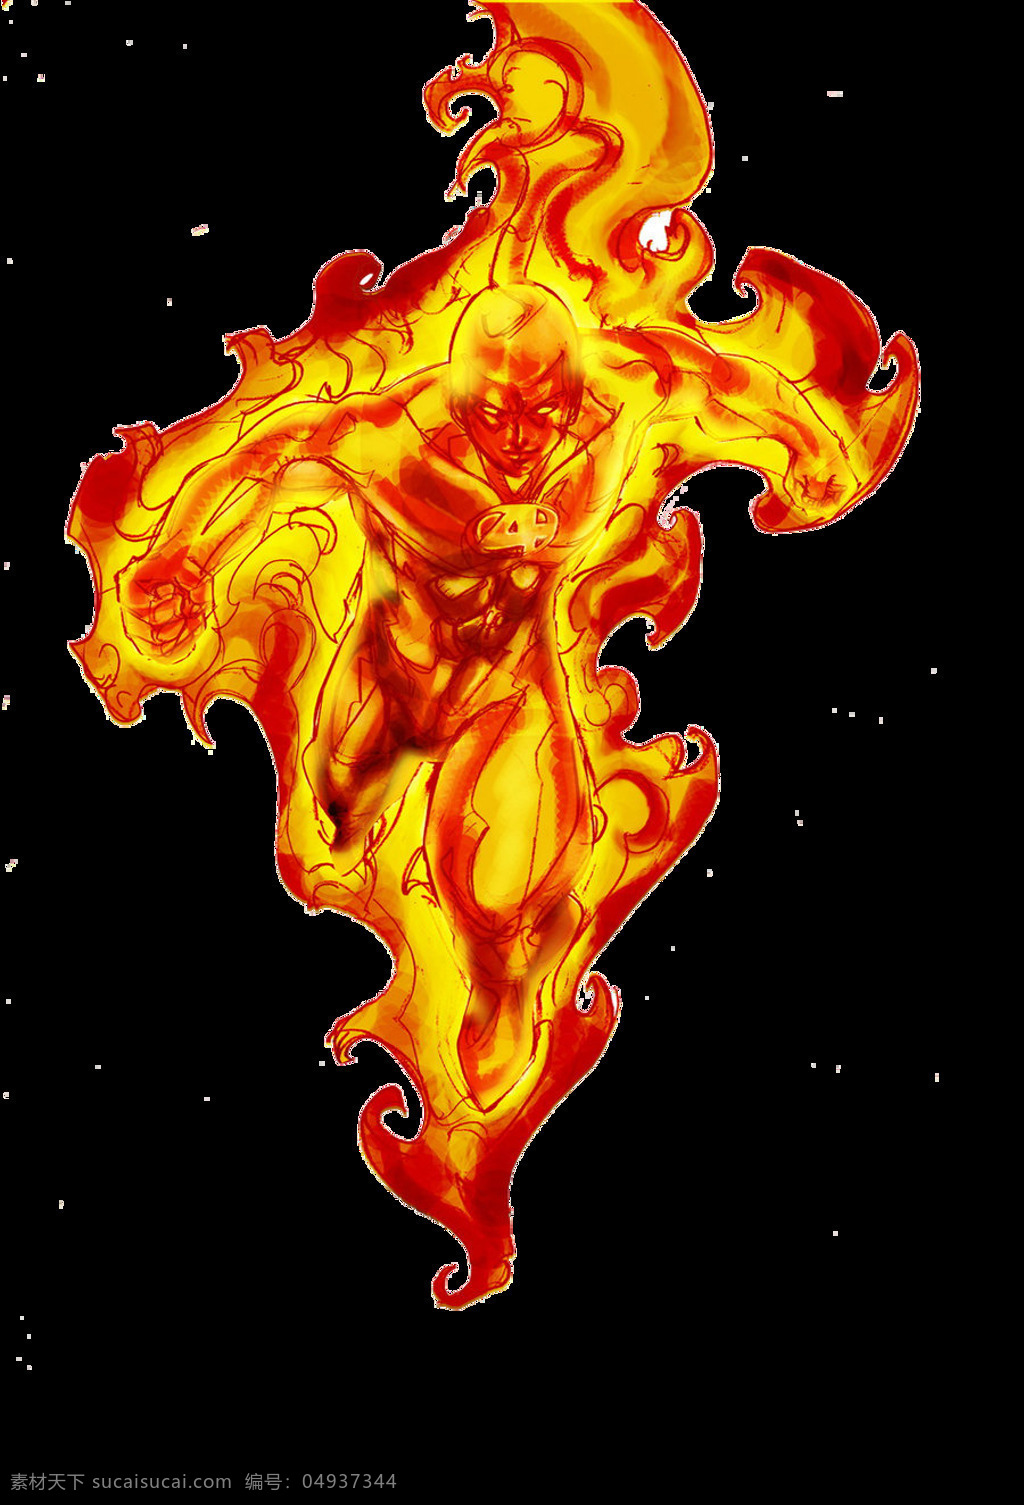 燃烧 人形 火焰 免 抠 透明 霹雳火图片 霹雳火漫画图 霹雳火视觉图 霹雳火创意图 火人漫画 燃烧的人 着火的人 点着的火人